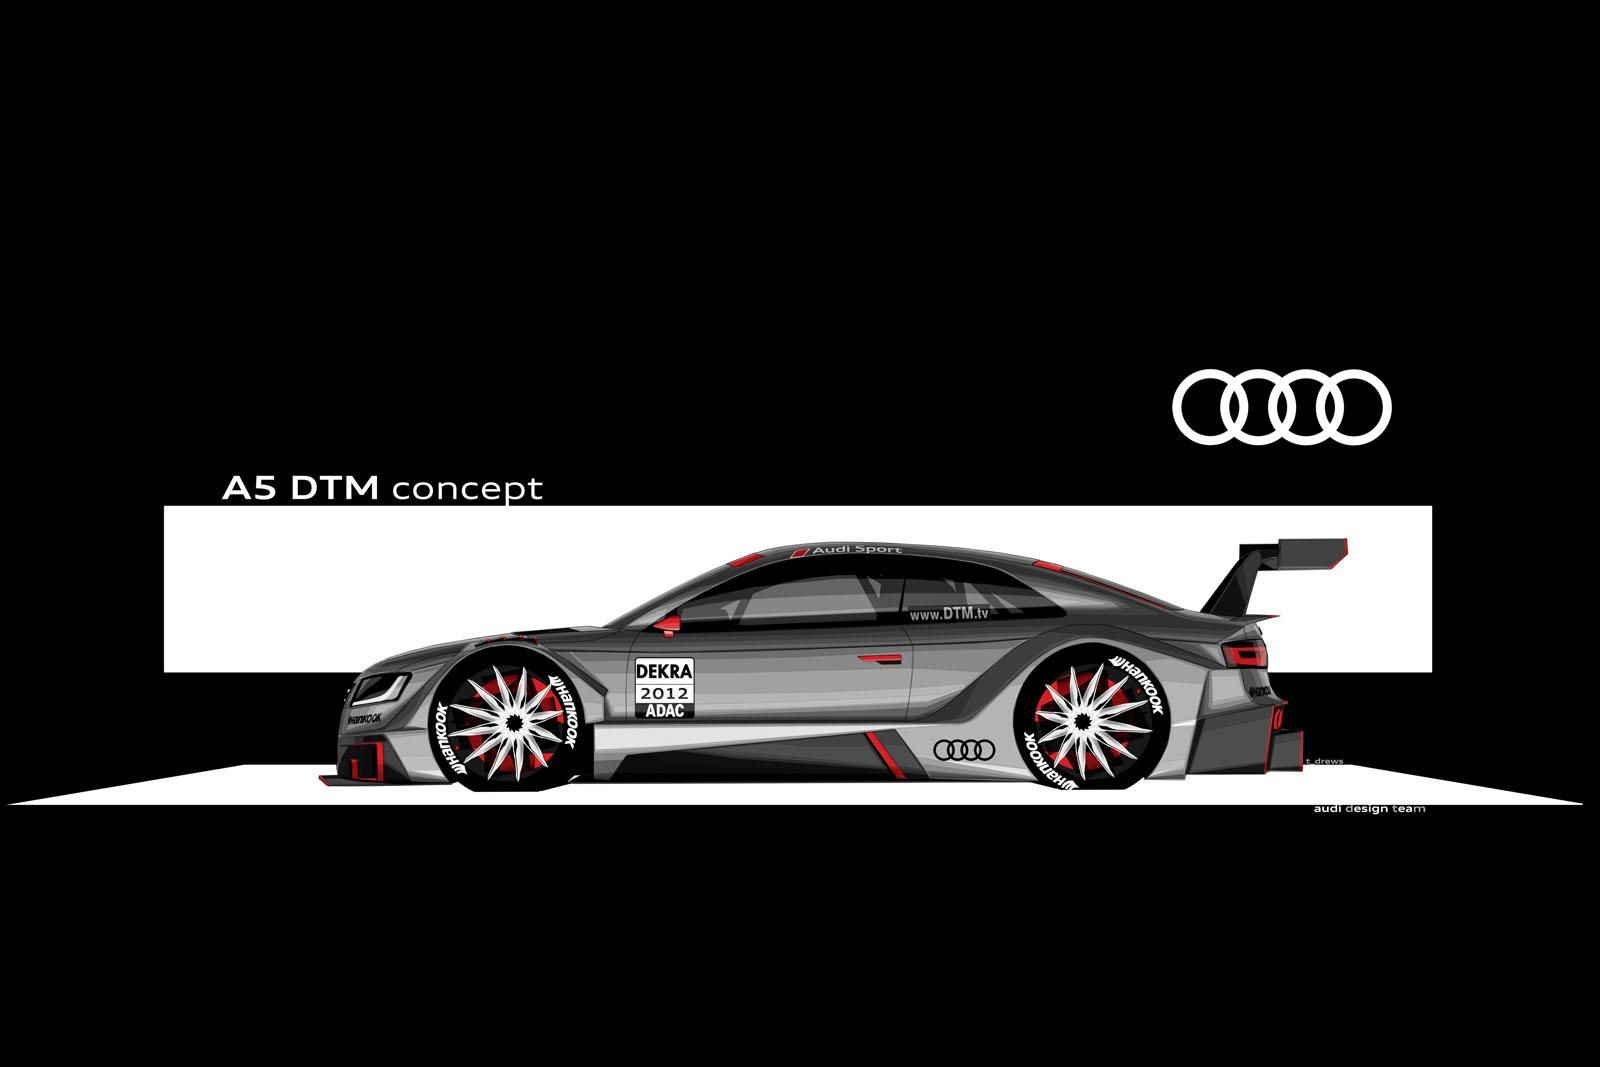 2012 Audi A5 DTM concept